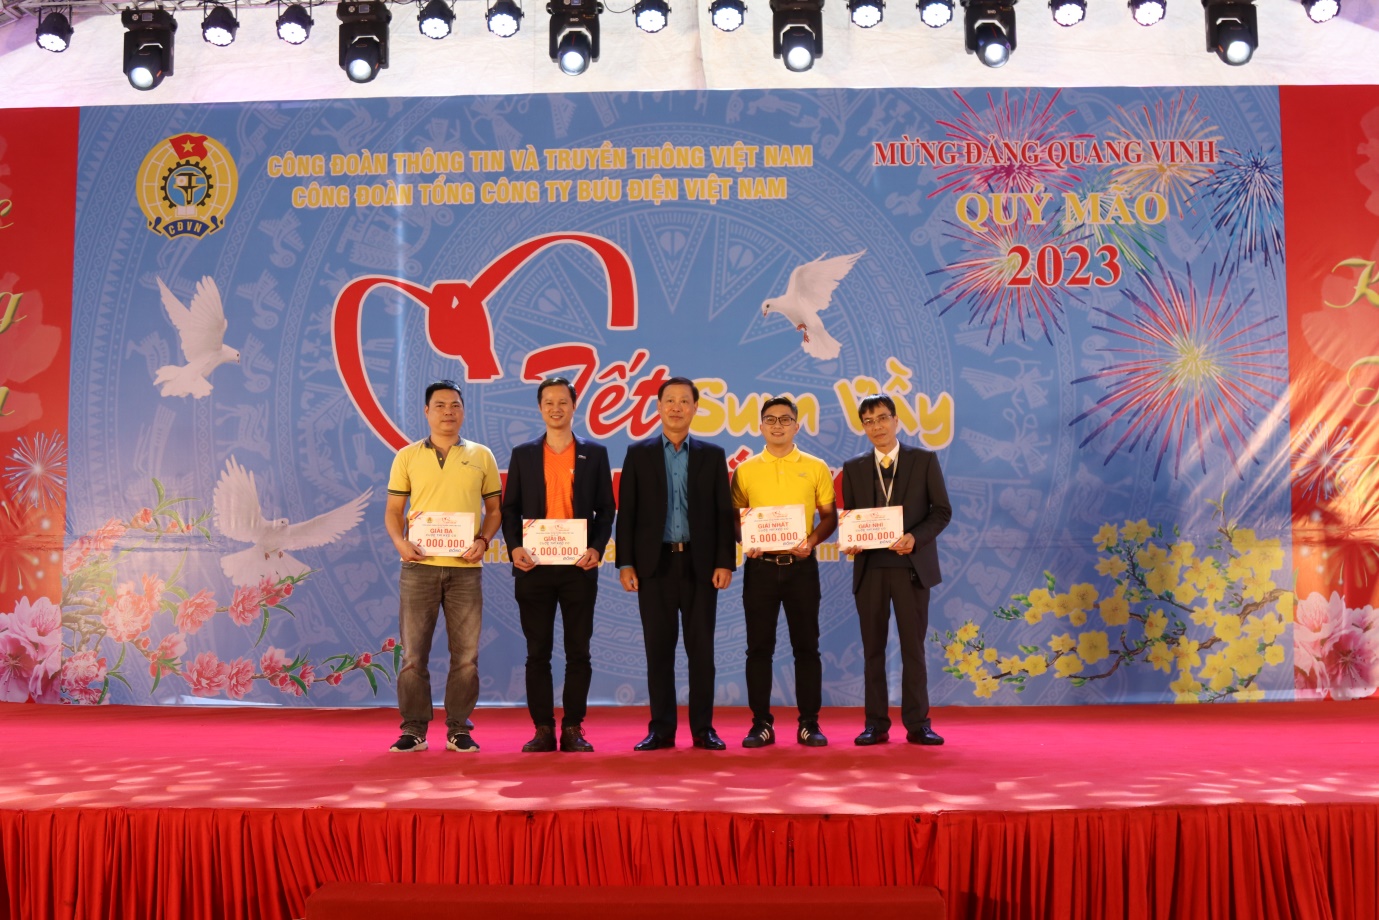 Công đoàn Thông tin và Truyền thông Việt Nam tổ chức  các hoạt động chăm lo cho đoàn viên và người lao động  nhân dịp Tết Nguyên đán Quý Mão 2023